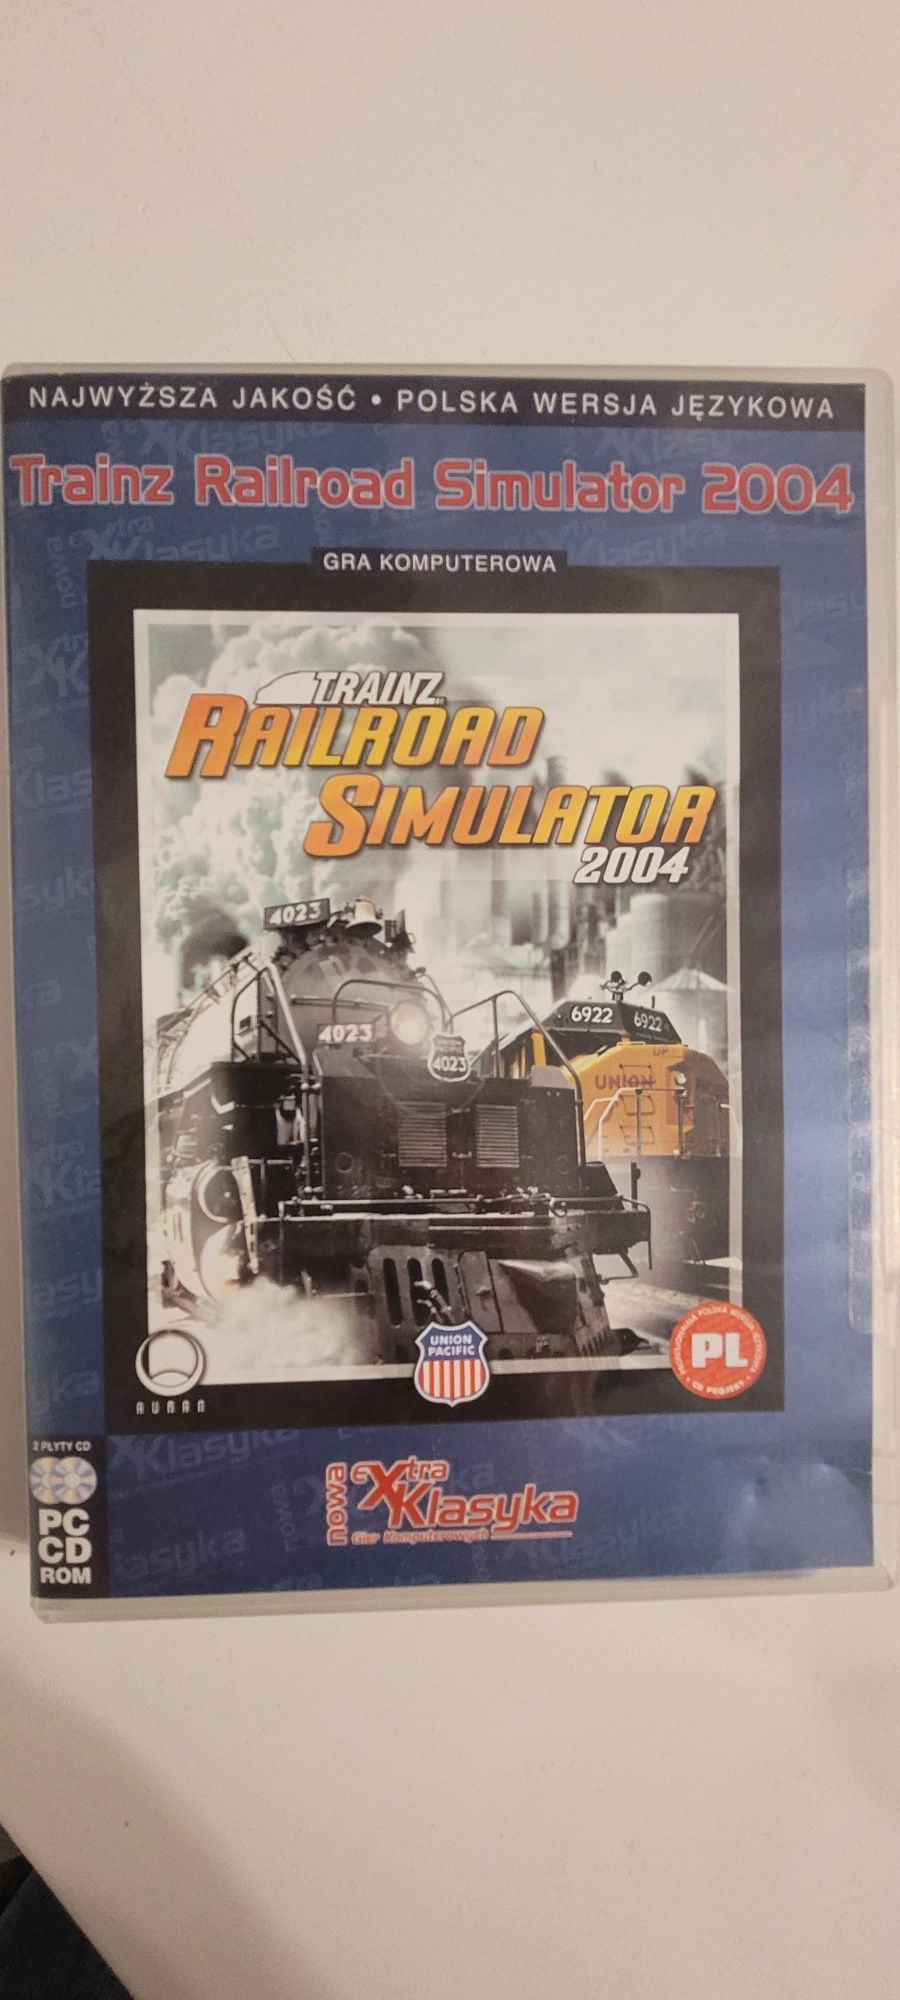 Gra komputerowa Trainz Railroad Simulator 2004 ra na PC